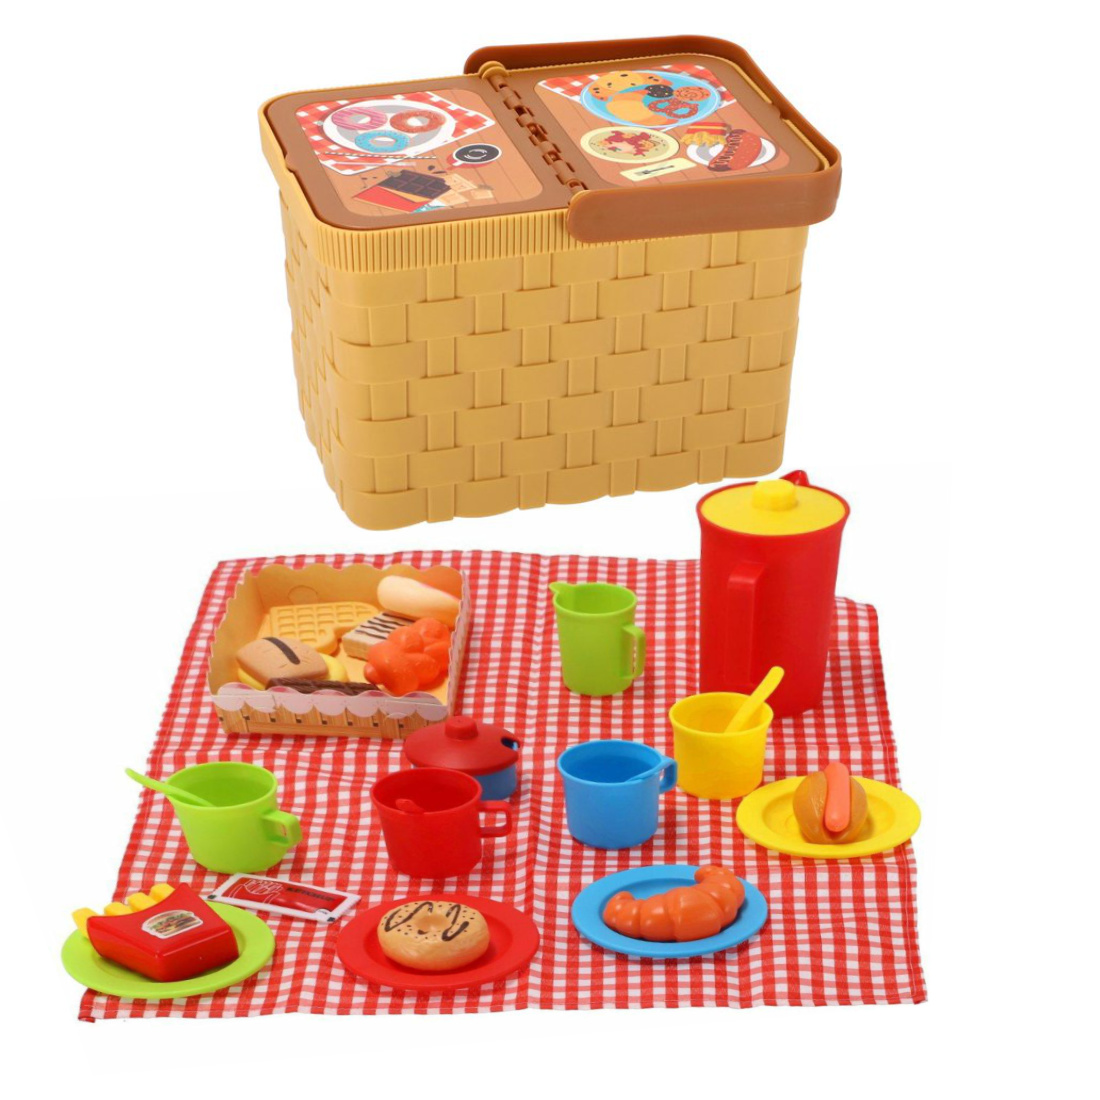 Picknickkorb mit 35 Teile Geschirr Besteck Kanne Decke 